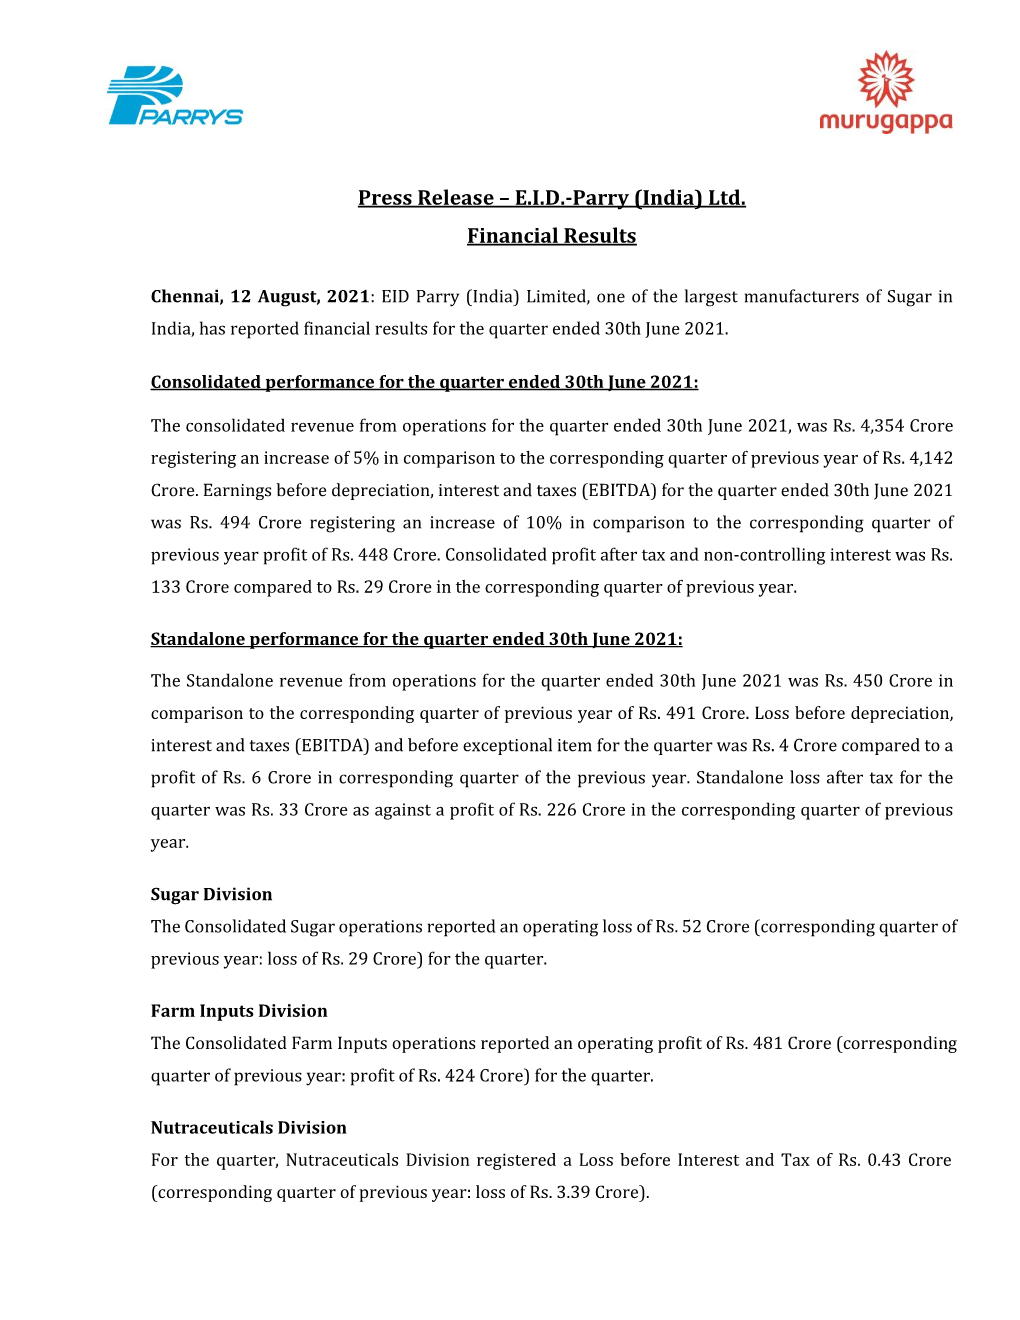 EID Parry Press Release